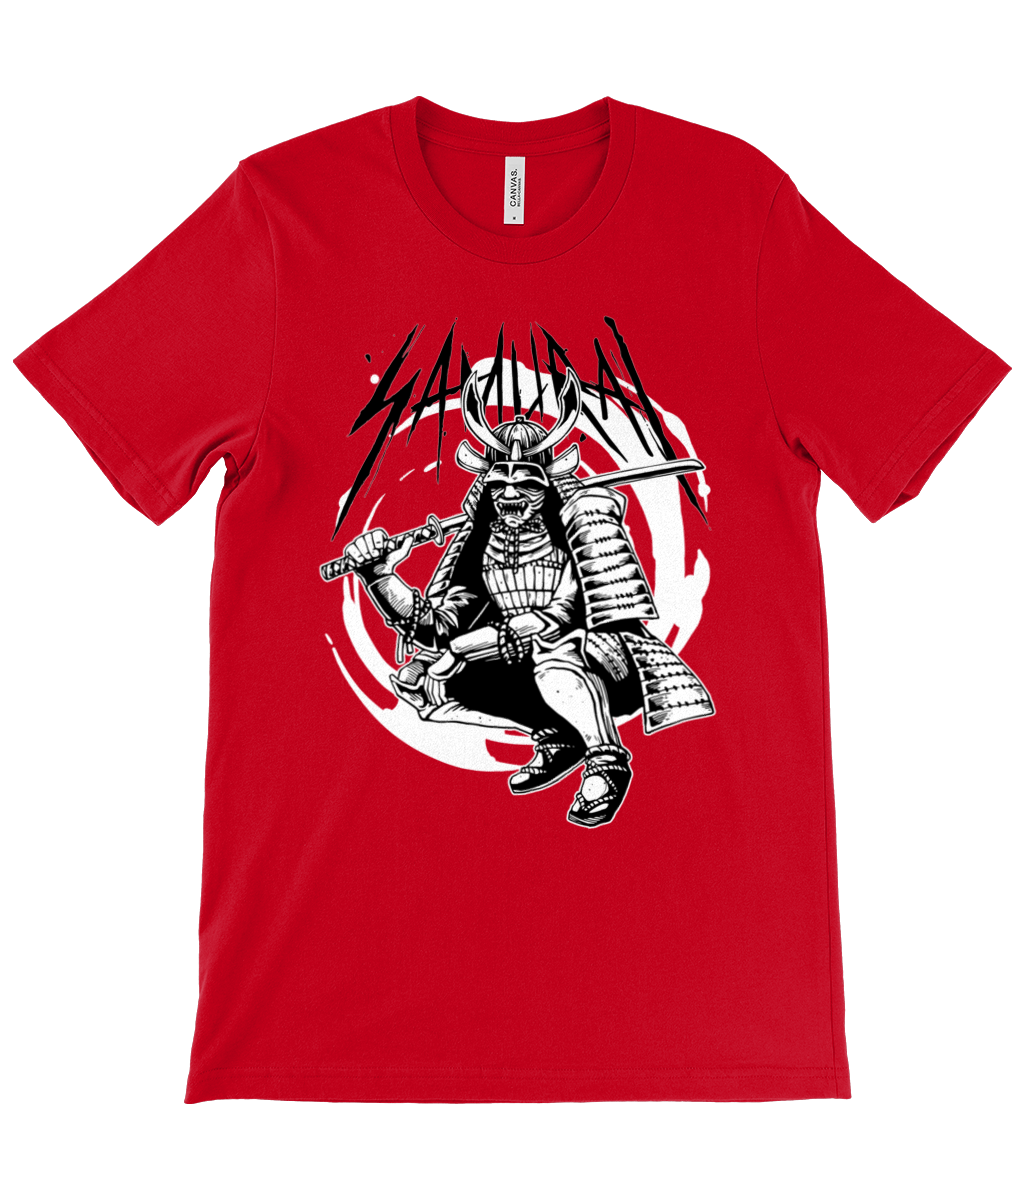 Crouching Samurai Crew Neck T-Shirt